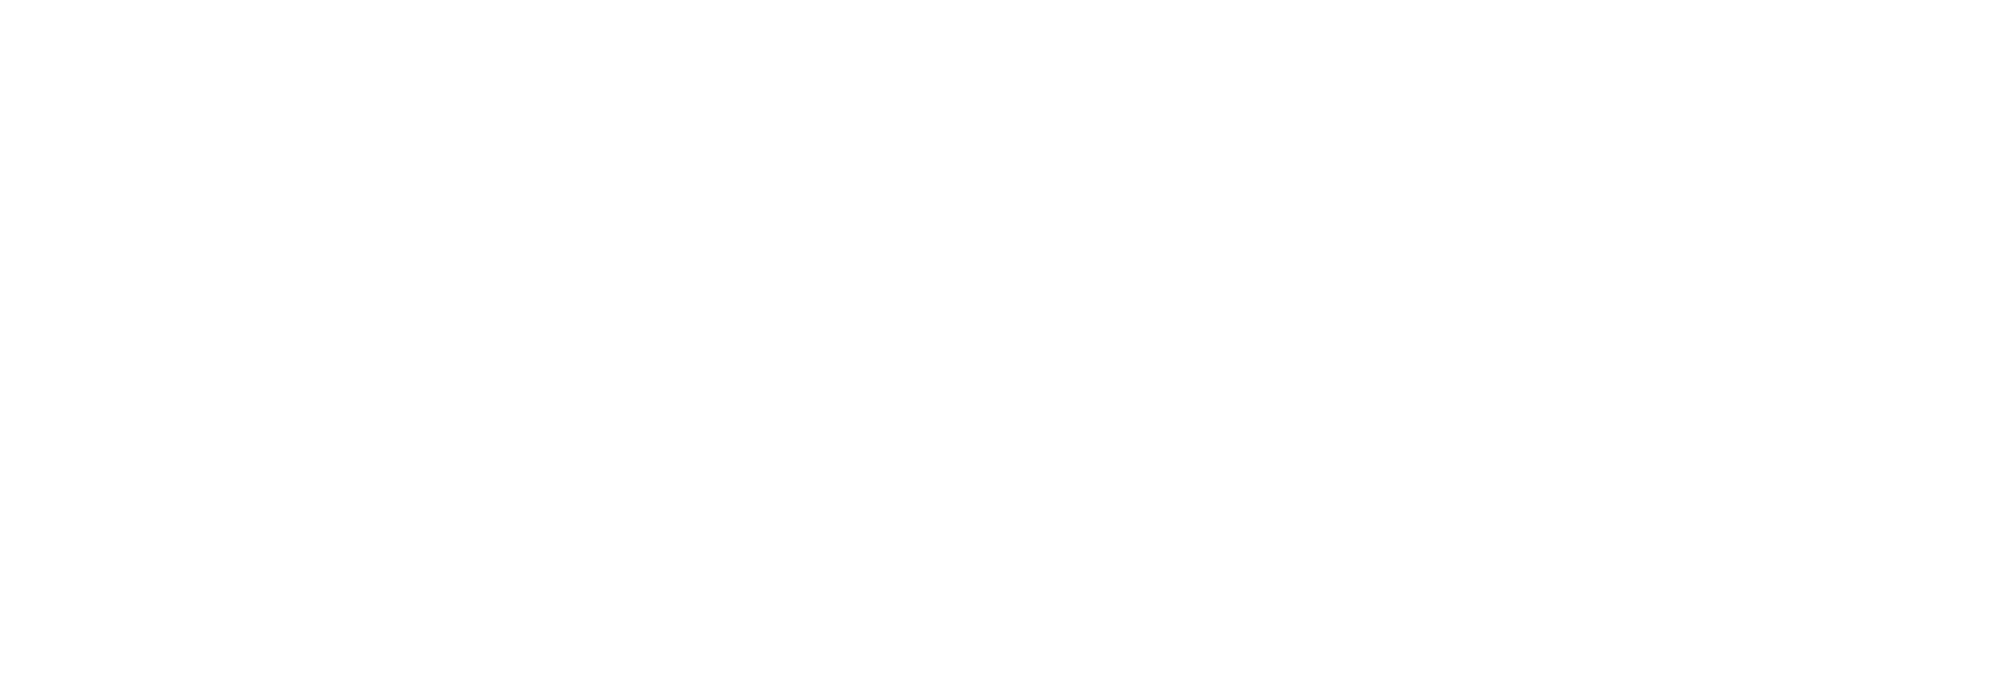 WordPress-logotype-standard-white.png